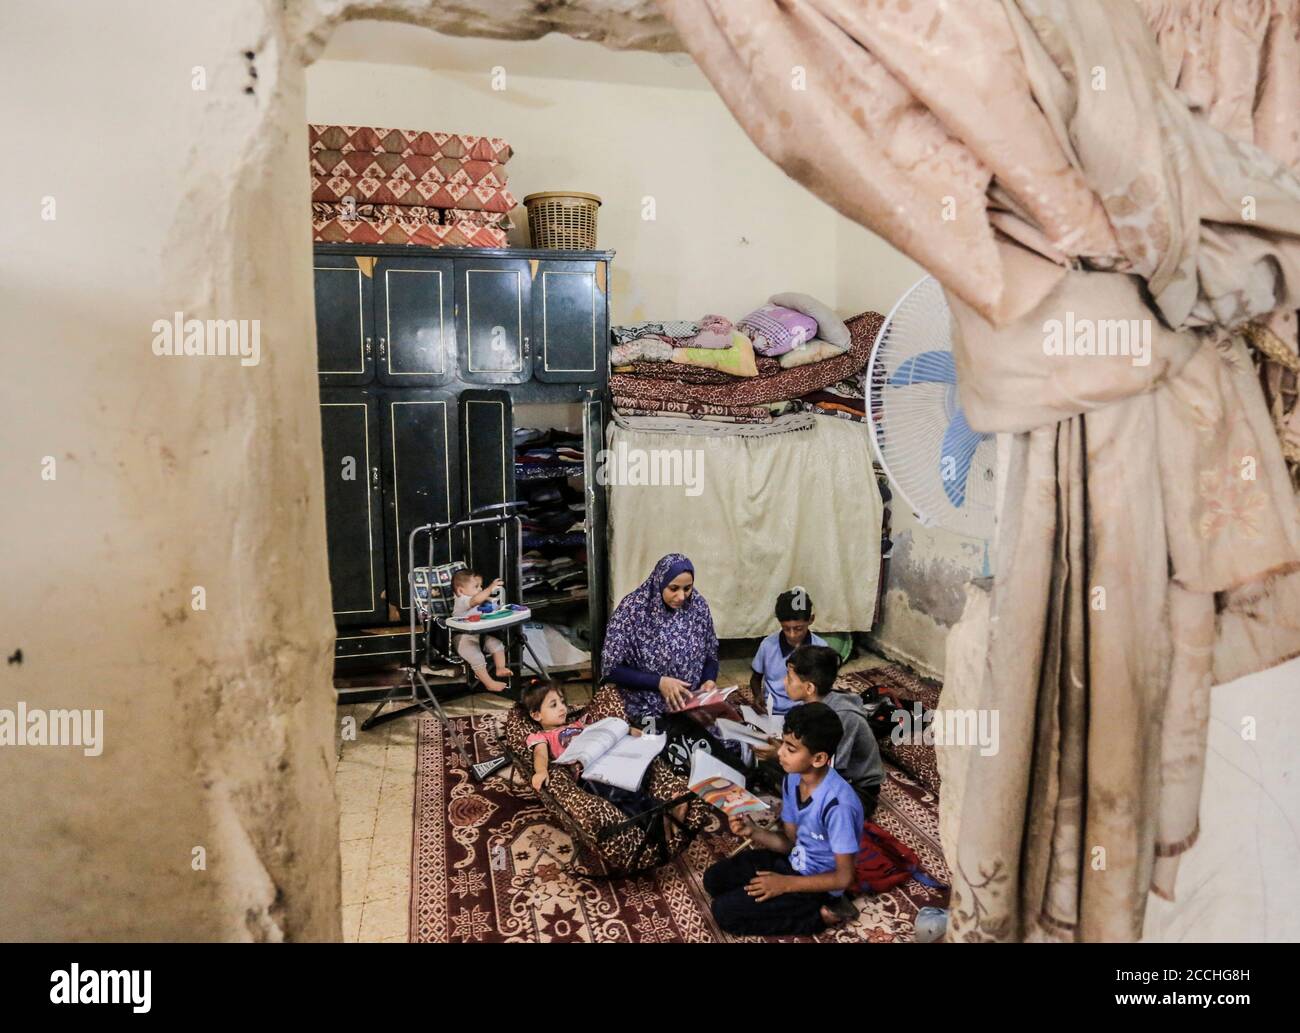 22 de agosto de 2020, Ciudad de Gaza, la Franja de Gaza, Palestina: La familia del palestino Abu Mazen Dahir se sienta en su casa en el barrio Shejaiya en la Franja de Gaza oriental. Una familia palestina de la Franja de Gaza tiene más de 84 miembros que viven en una casa vieja y deteriorada que consta de sólo 3 plantas, Y toda una familia formada por un padre, madre y 4 hijos murieron en ella hace años debido a un incendio que estalló en su habitación, recibieron numerosas promesas de los funcionarios para restaurar la casa en ruinas, sin éxito hasta este momento. (Imagen de crédito: © Mahmoud Issa/Quds Net News Foto de stock